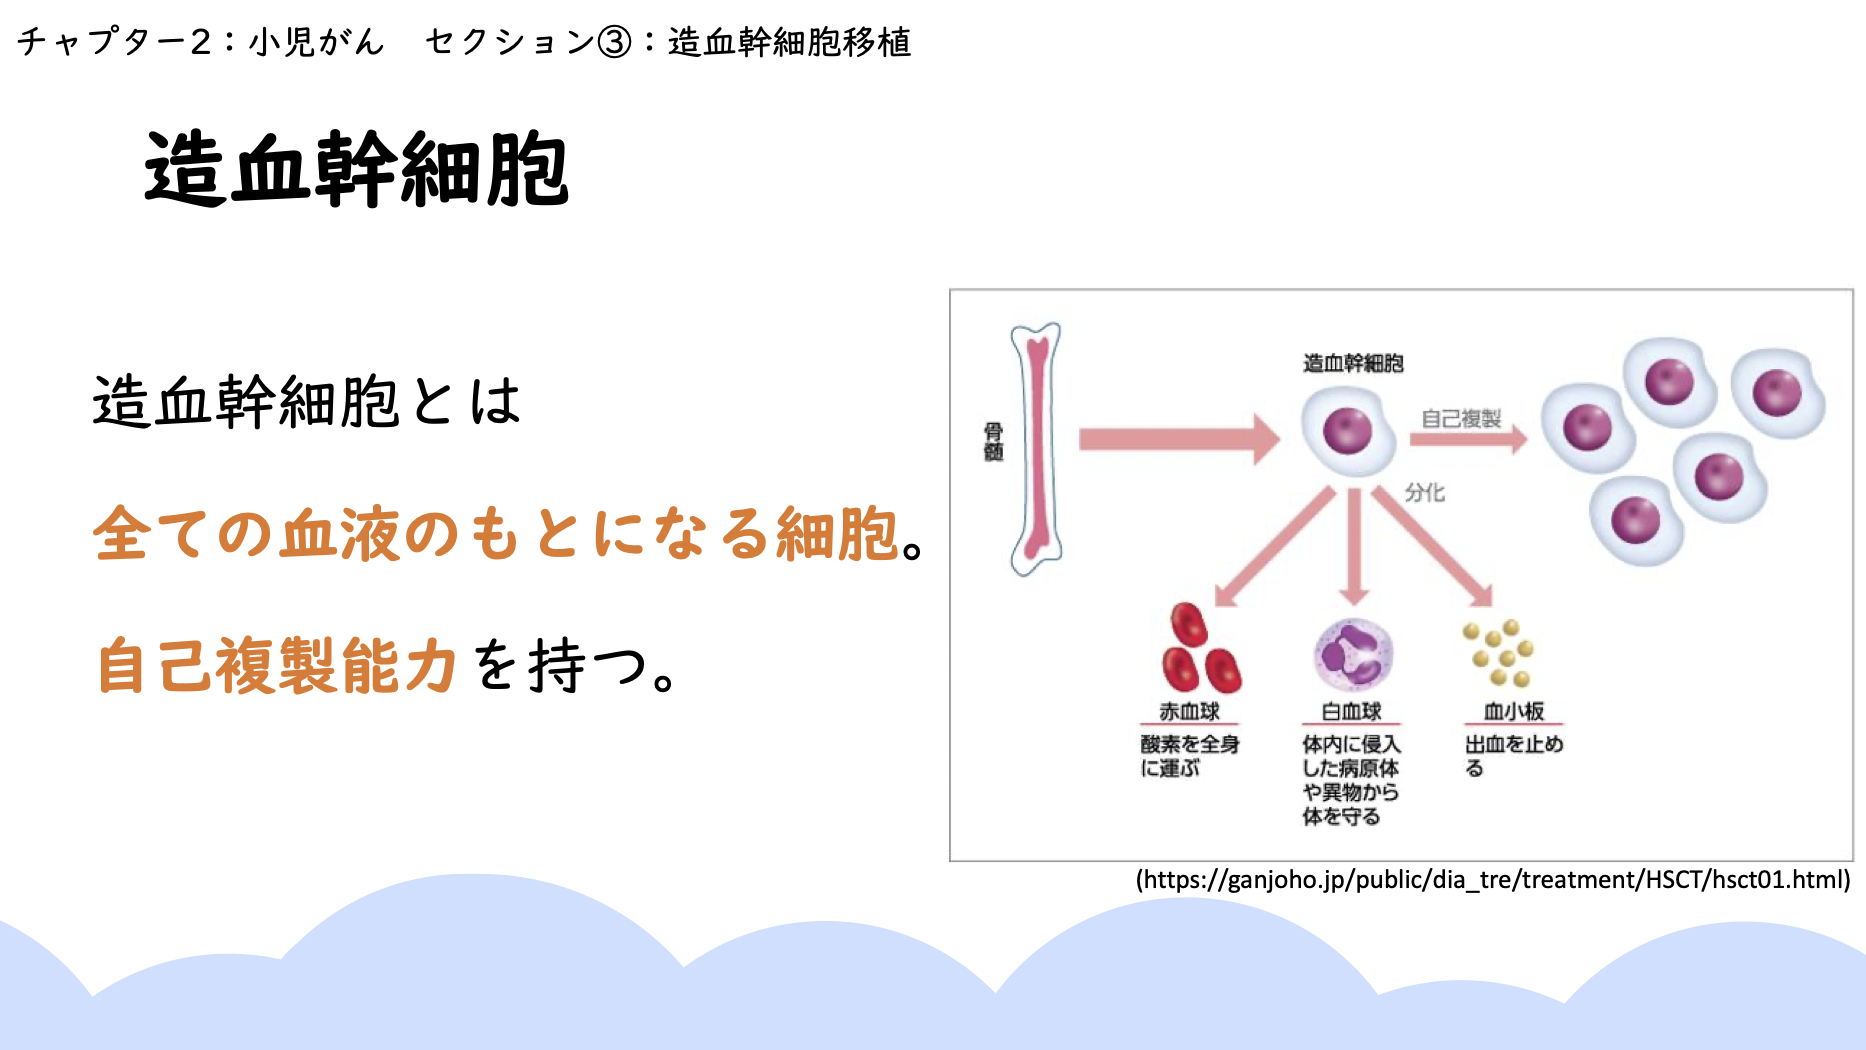 【全9回】がん看護のポイント:チャプター9-6:No.6:造血幹細胞移植